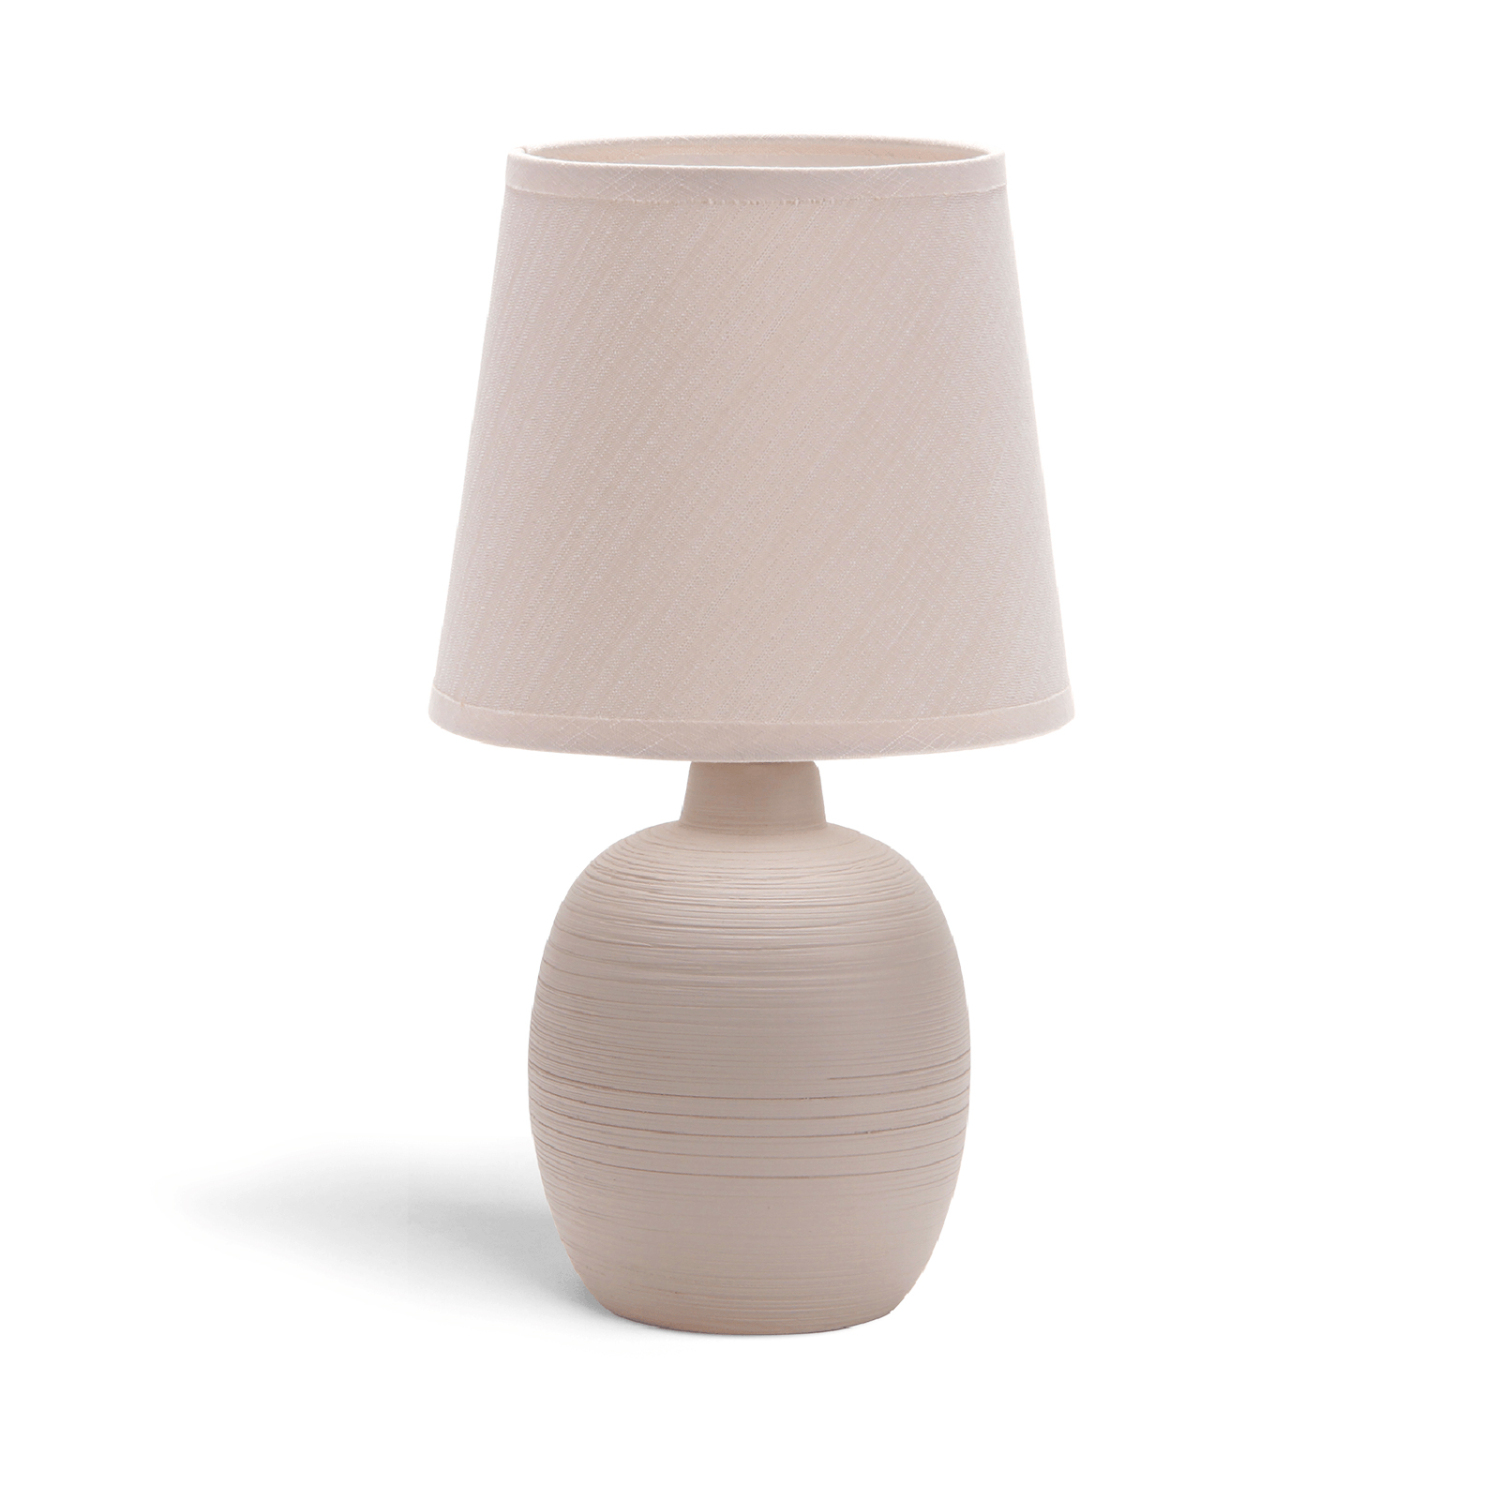 Aigostar - Lampada da Comodino, Moderna Lampada da Tavolo Base in Ceramica Paralume in Stoffa, Attacco E14, 17 * 17 * 31cm Cavo 1.3 Metri, Design Vintage.